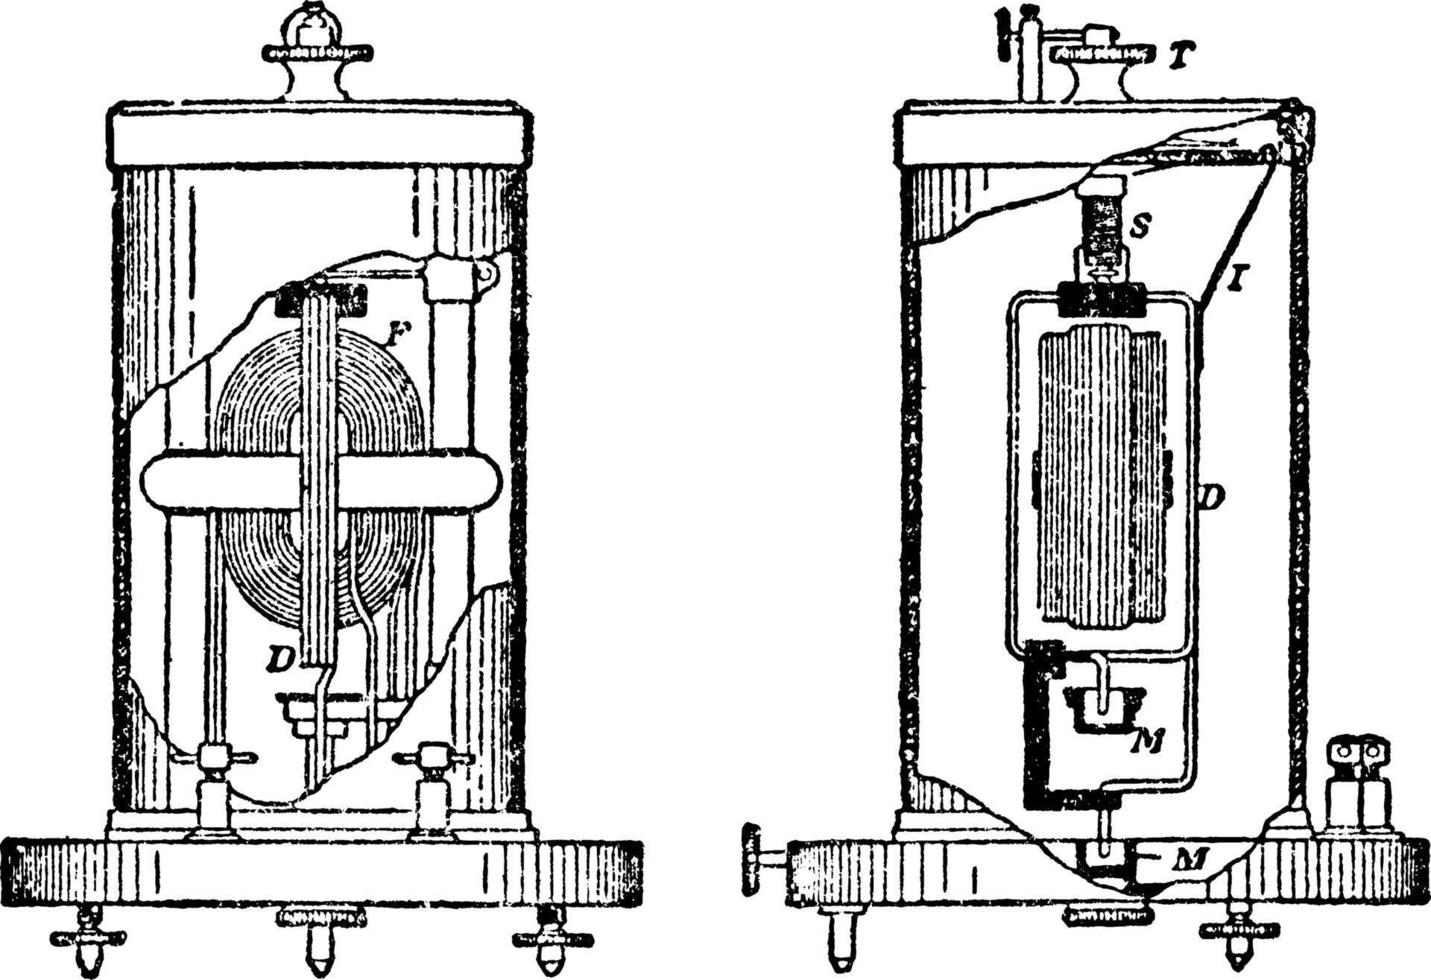 electrodinamómetro siemens, ilustración vintage. vector